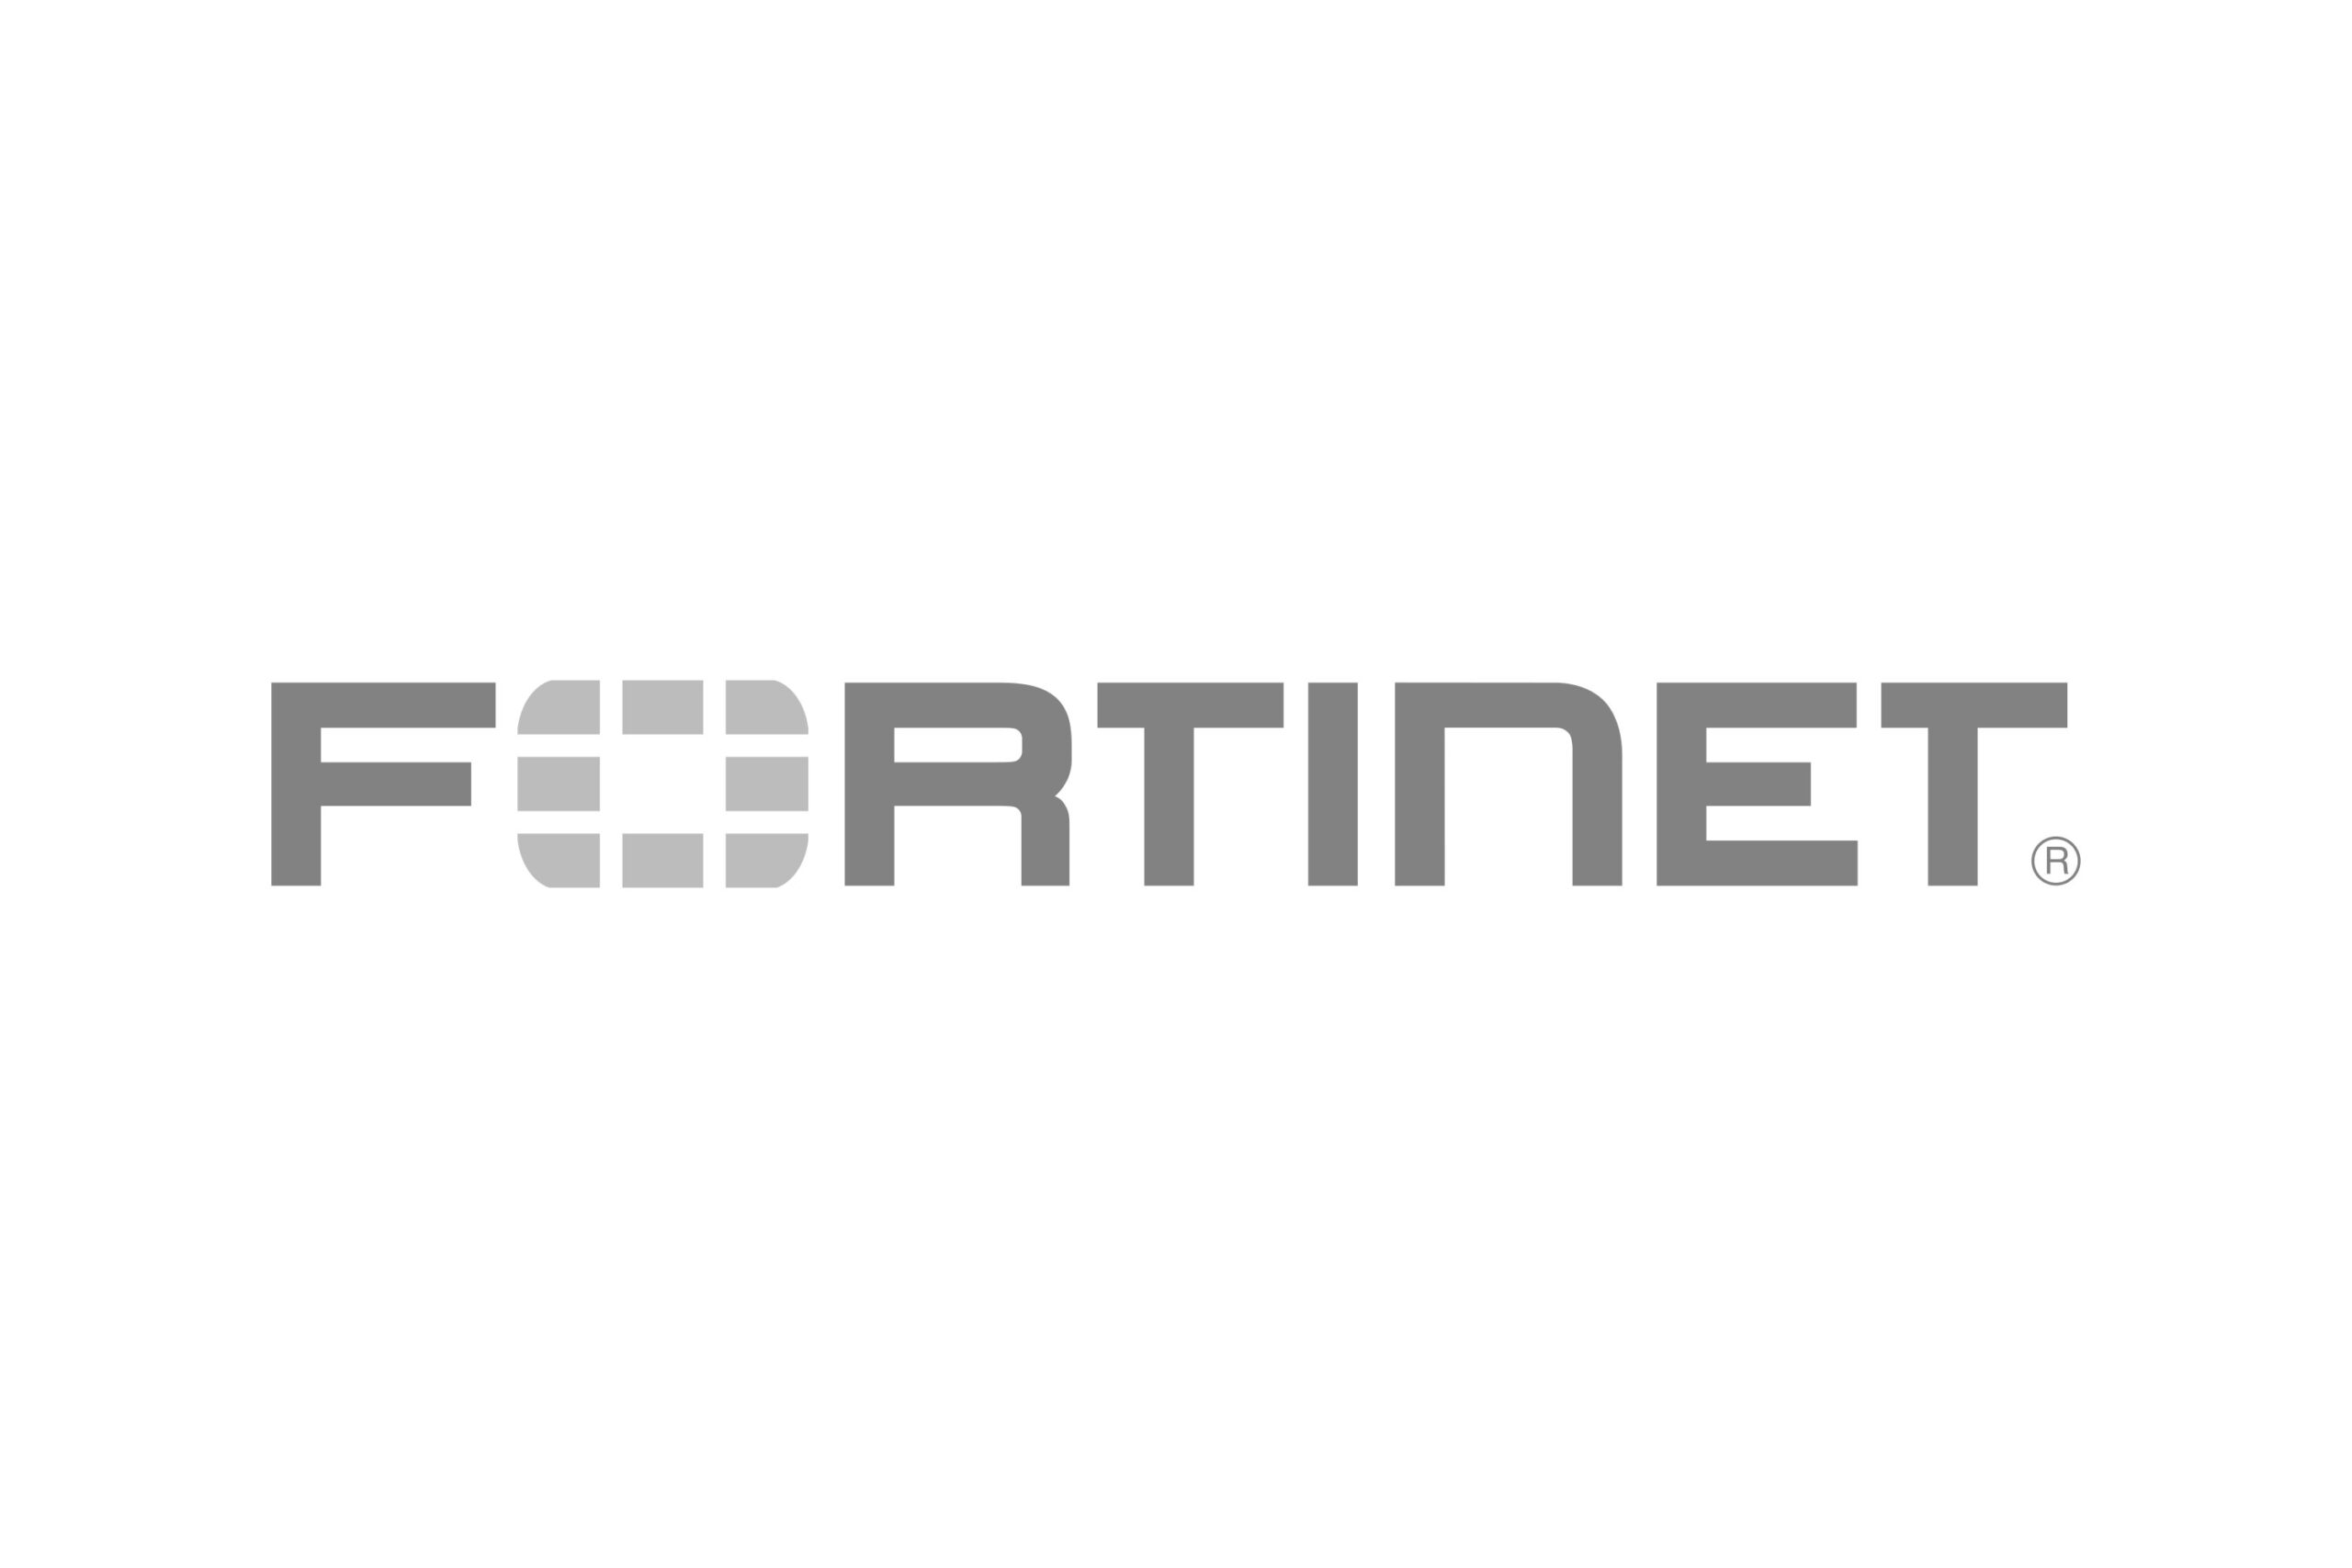 fortinet logo gray